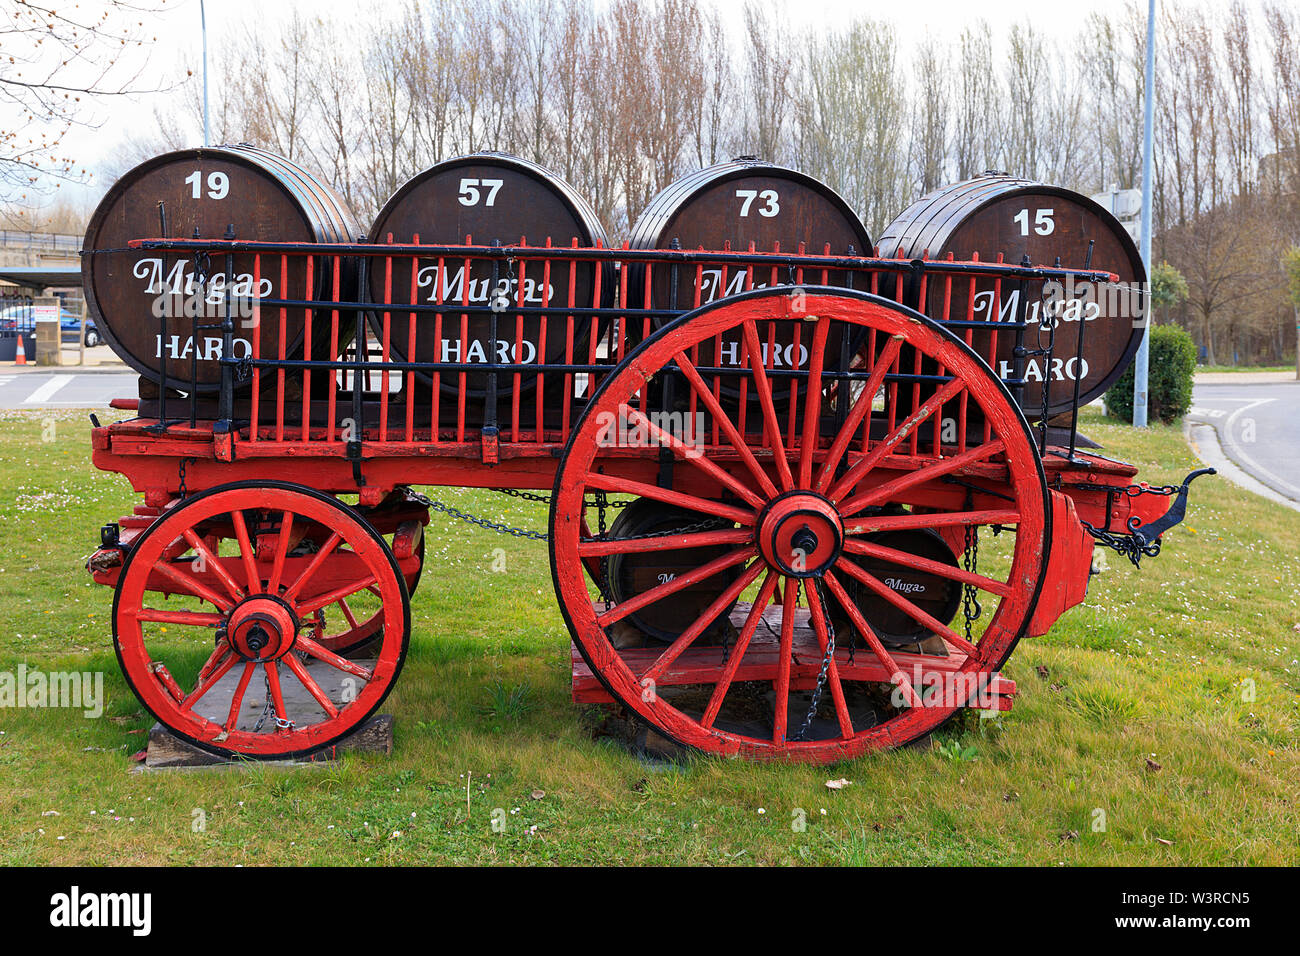 Caballos antiguo carro de madera utilizados para tranporting barriles de vino enfrente de Bodegas Muga, Haro, La Rioja, España Foto de stock